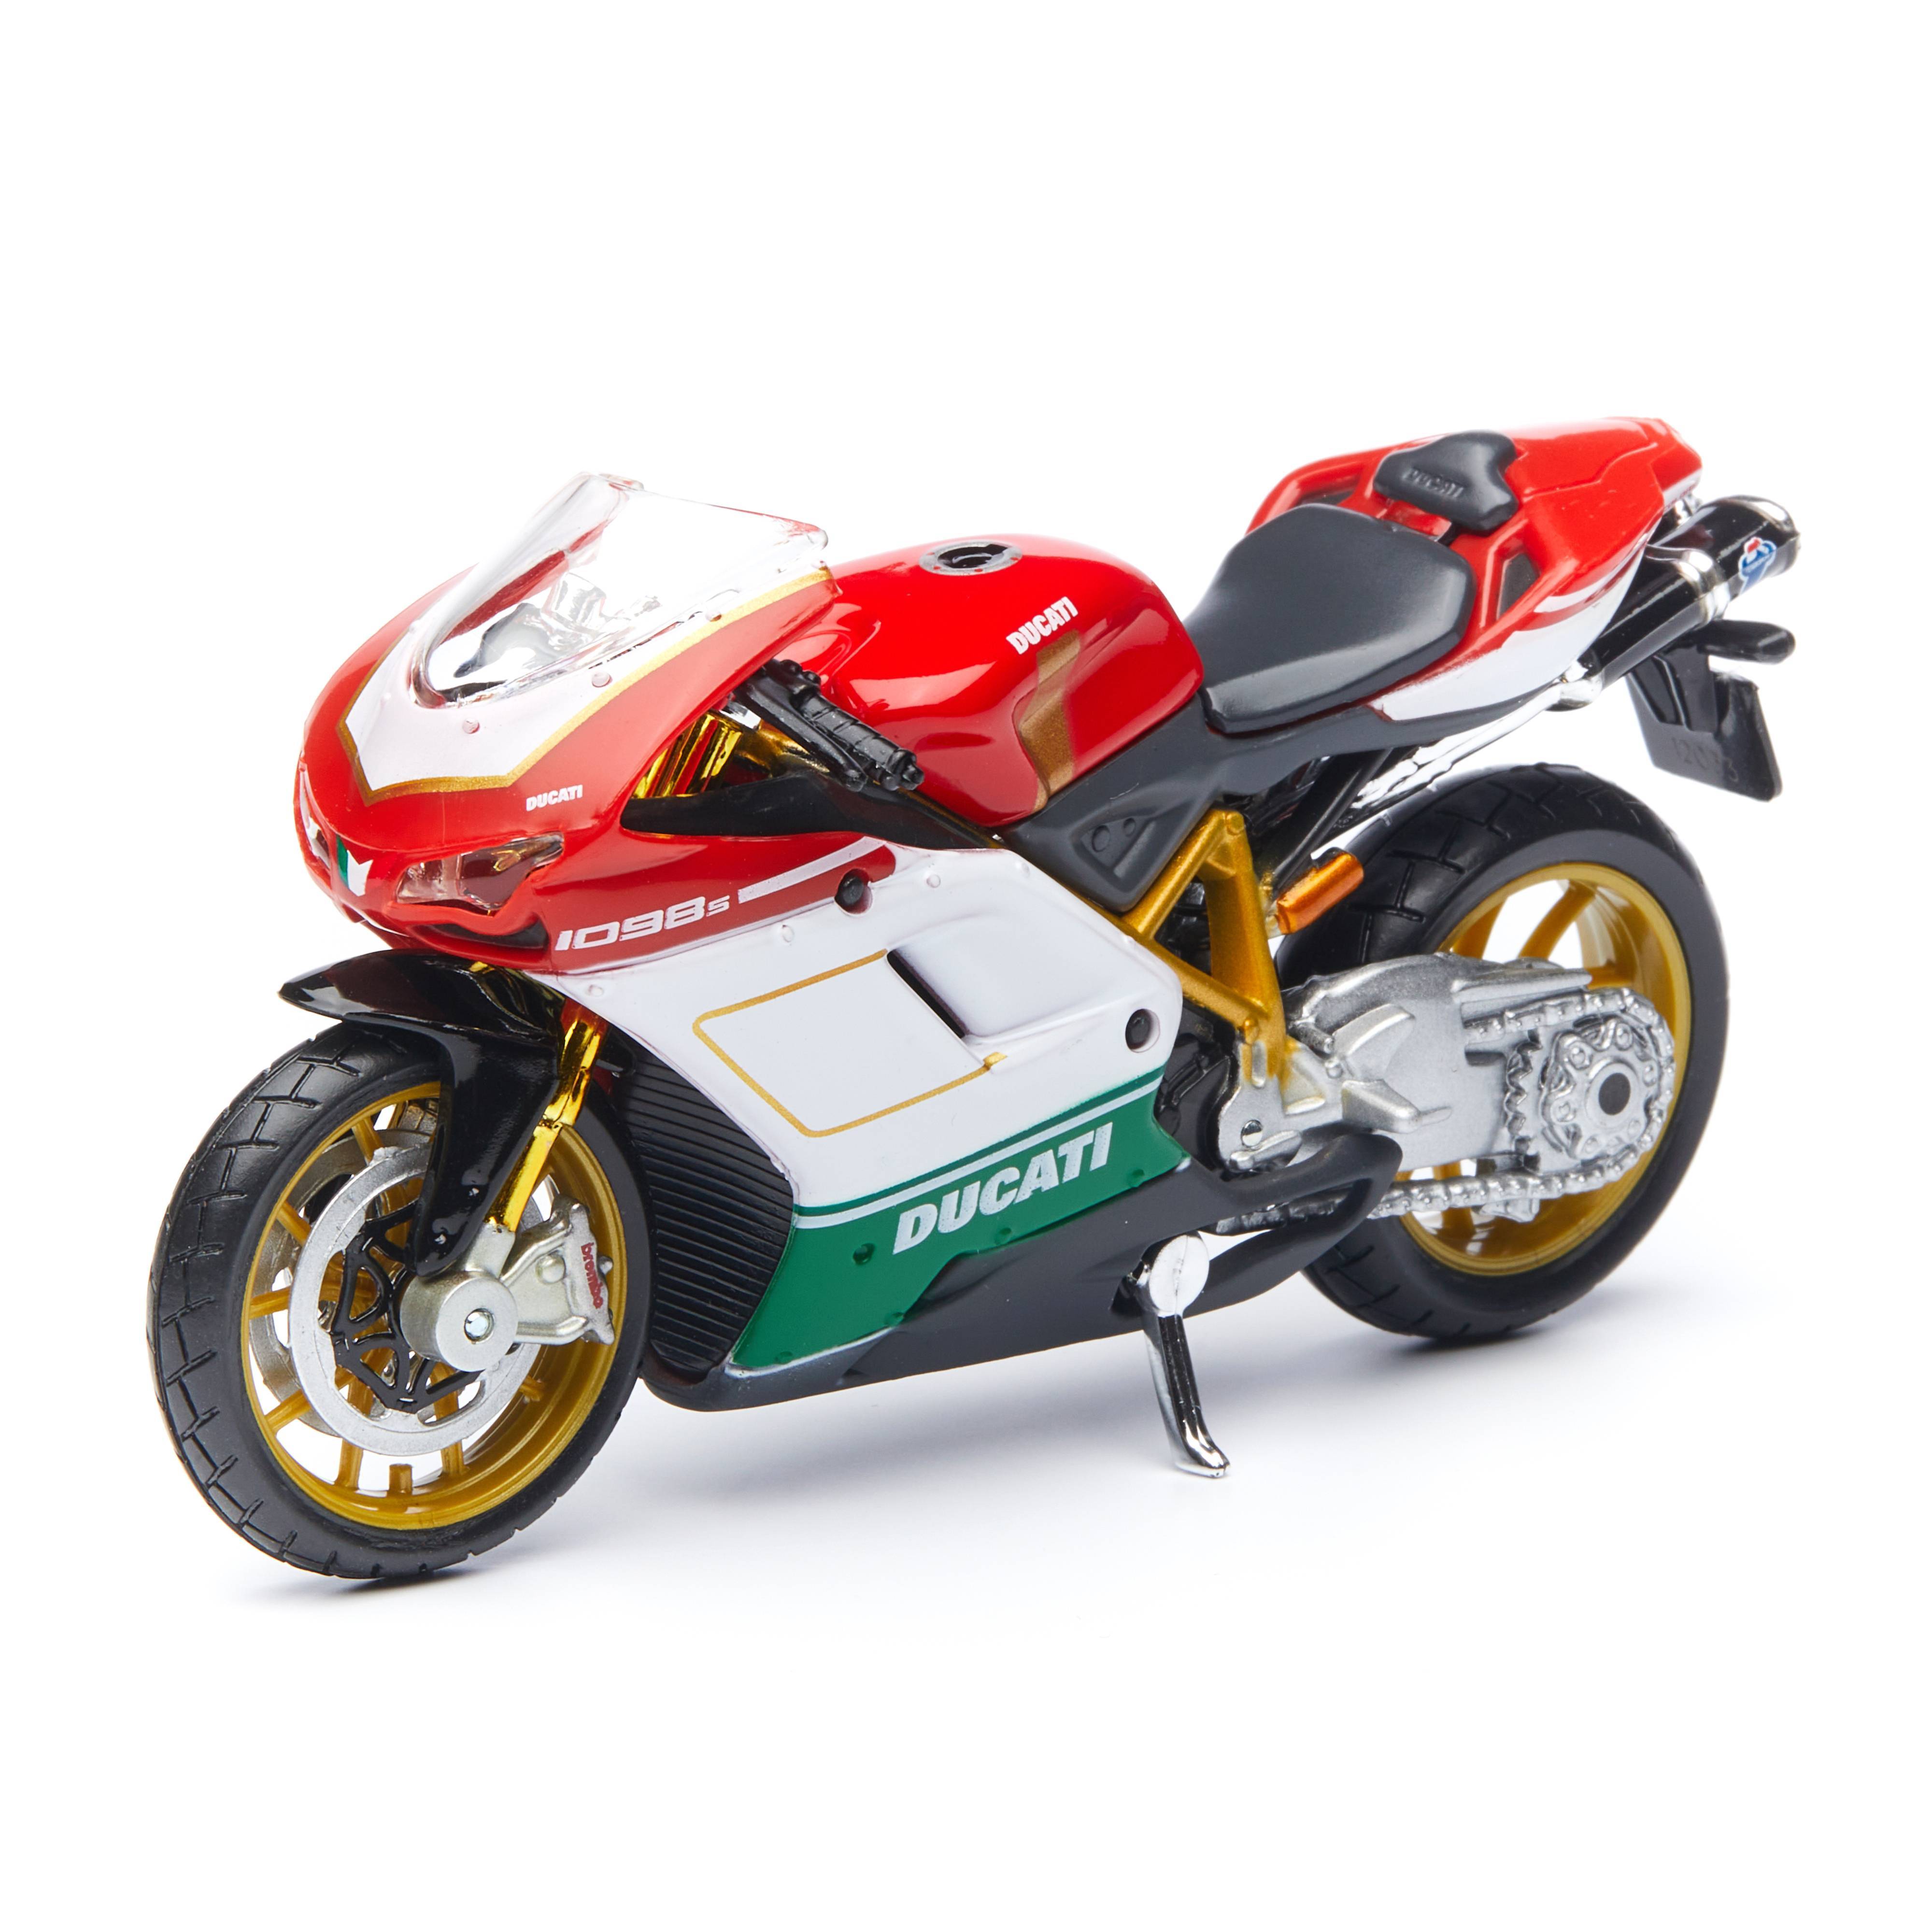 Maisto Мотоцикл Ducati 1098 S4 1:18, красный 39300/15